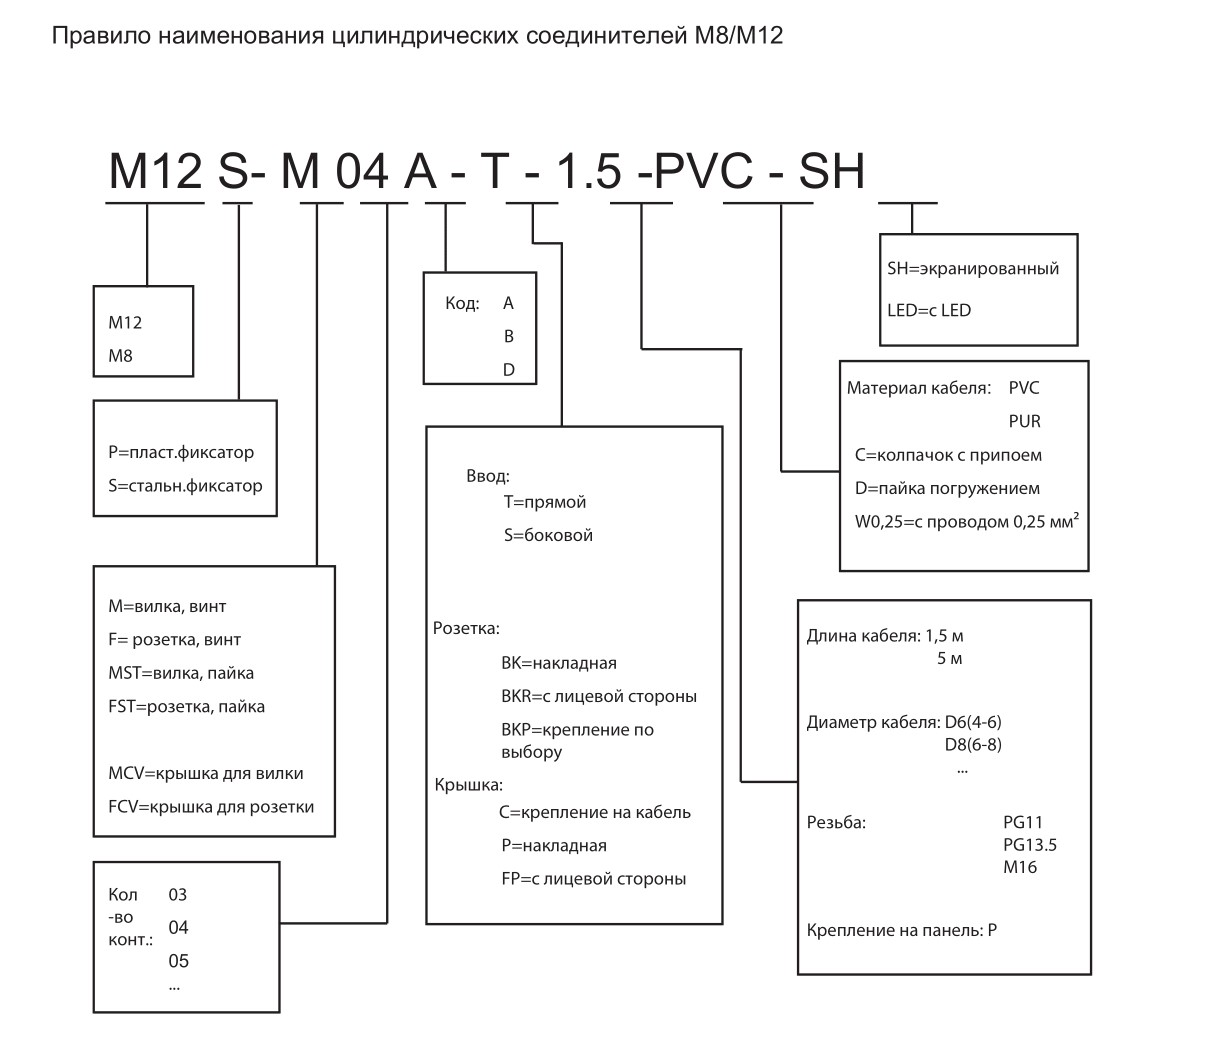 Цилиндрический соединитель-вилка/RJ45 (каб. сборка) M12-M04D-T/RJ45-19.0-DPUR-PFN 1630040014034: Структура обозначения